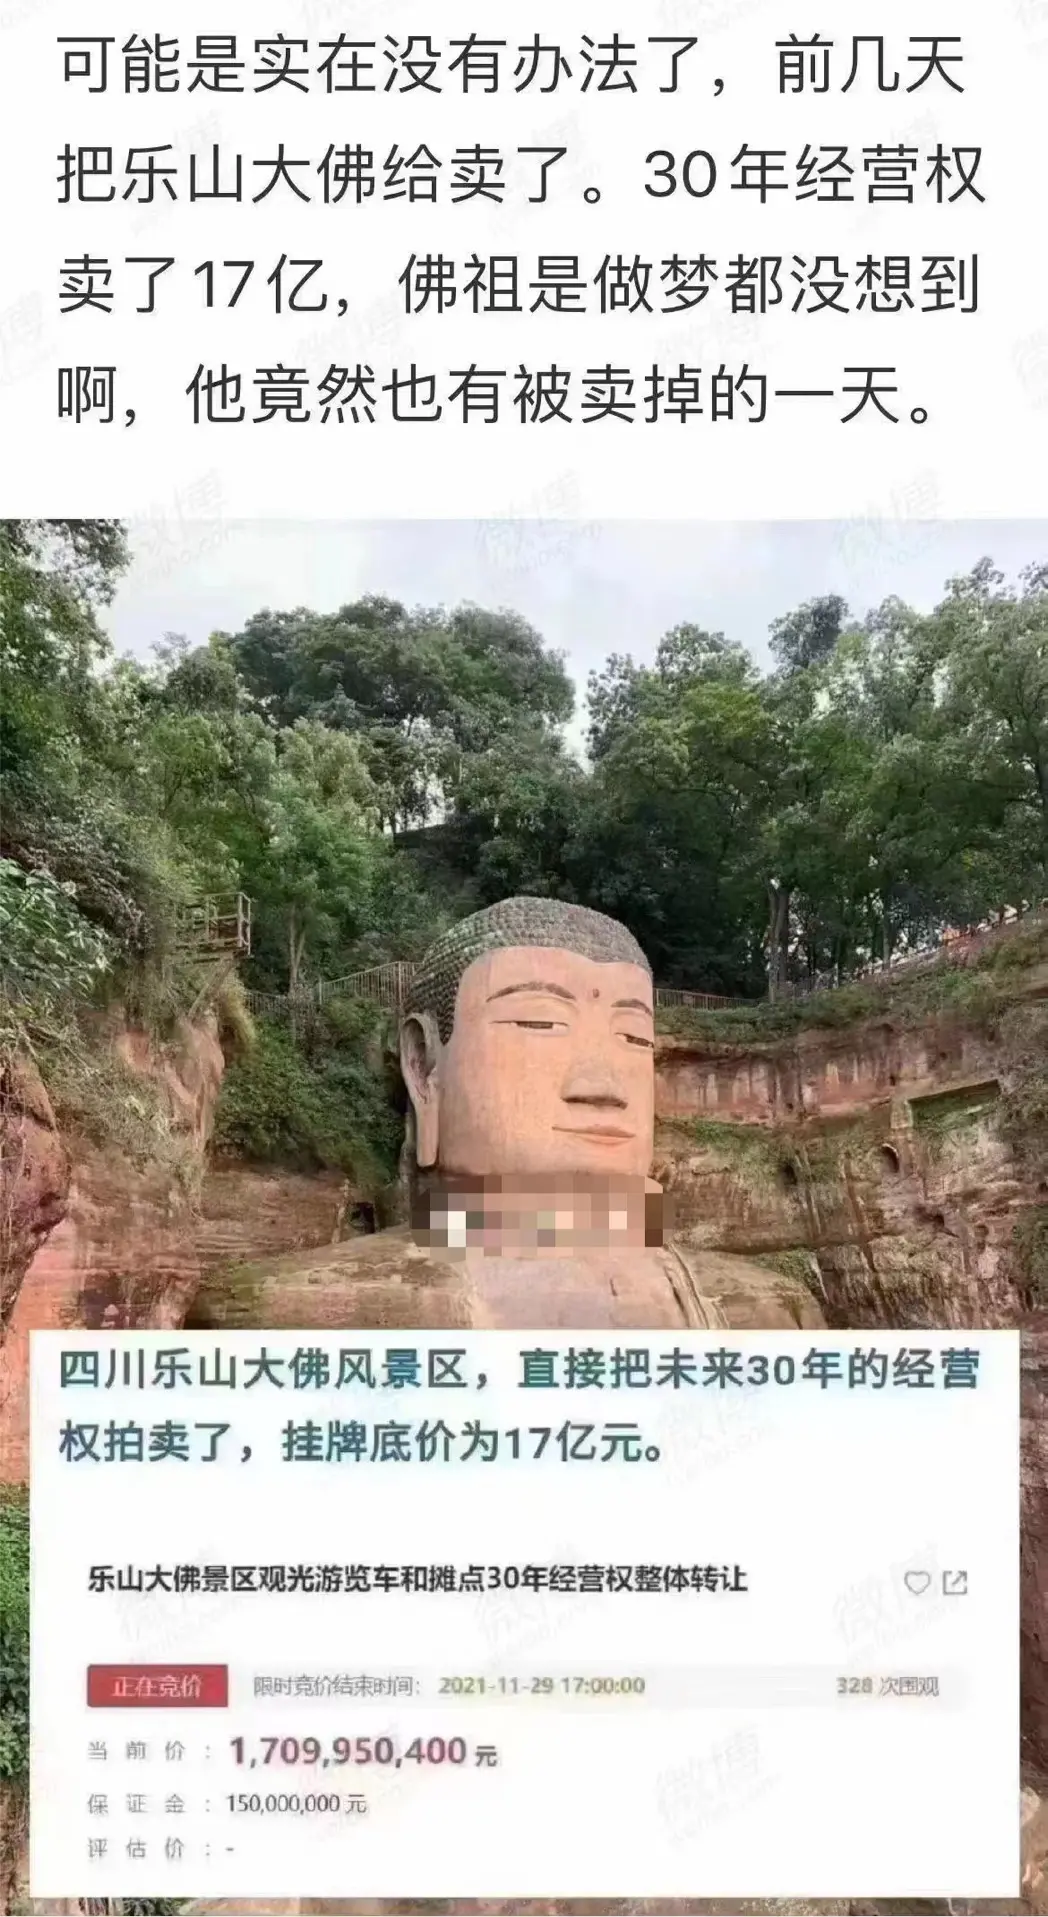 连日来，一则“楼市下跌，佛祖被卖了”的消息在网络上传播。